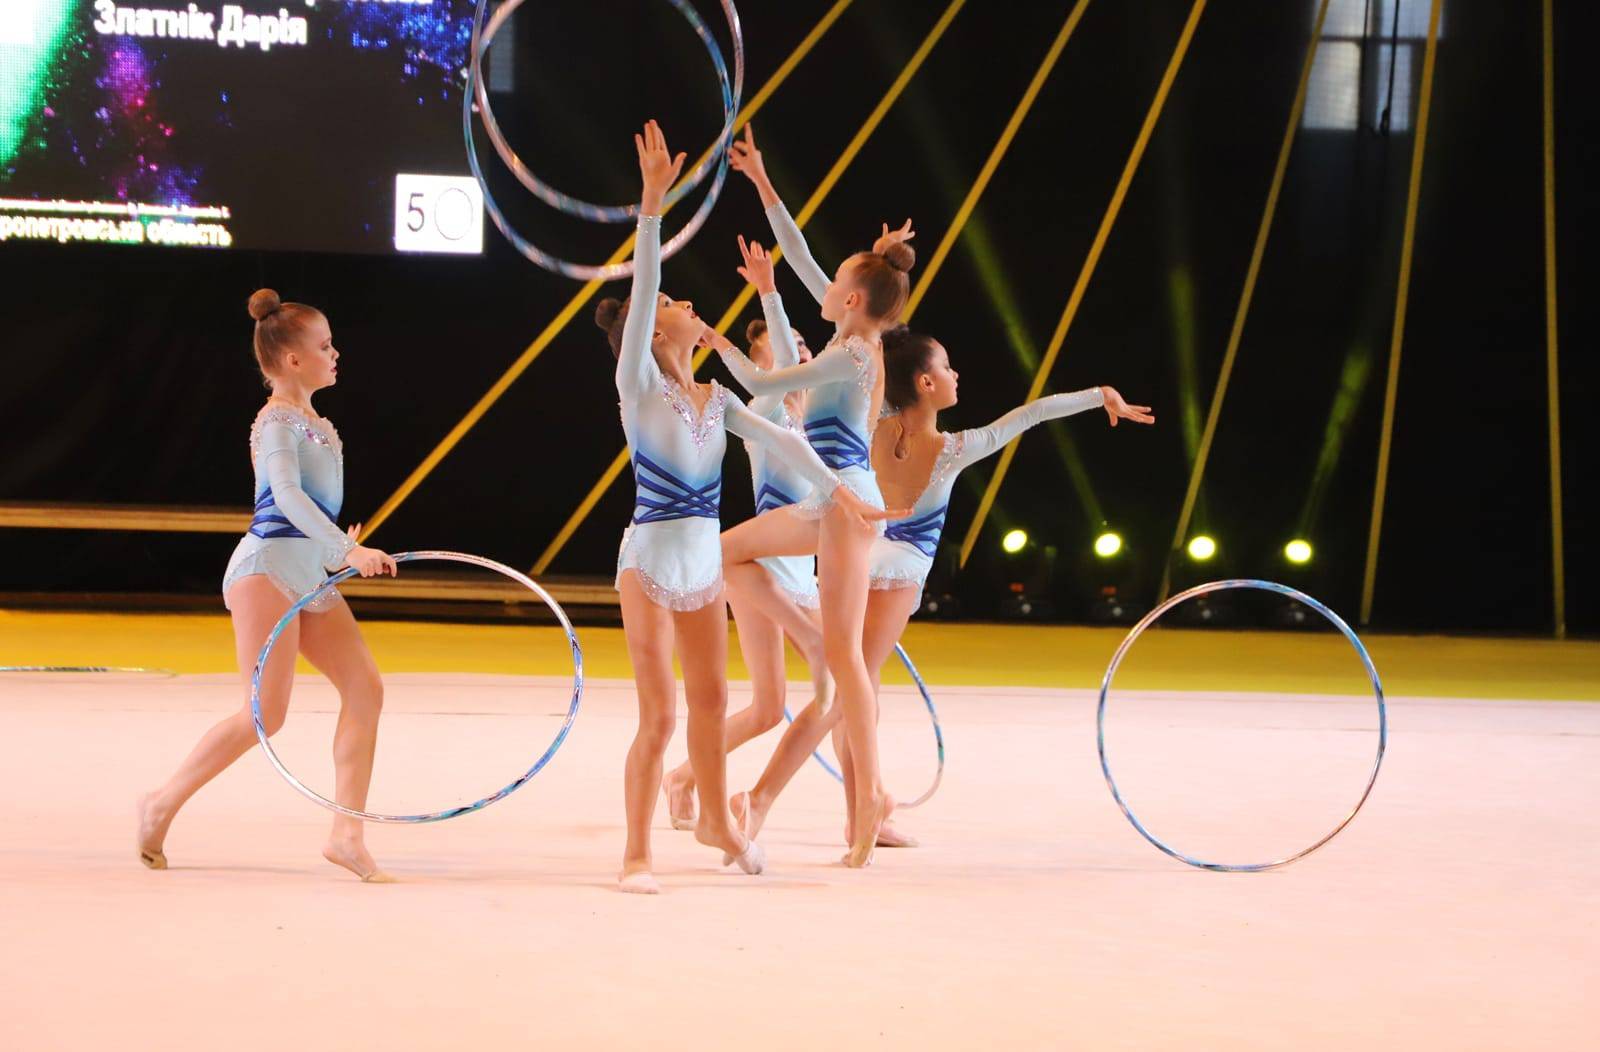 Ужгород зібрав понад тисячу юних гімнасток з усієї України